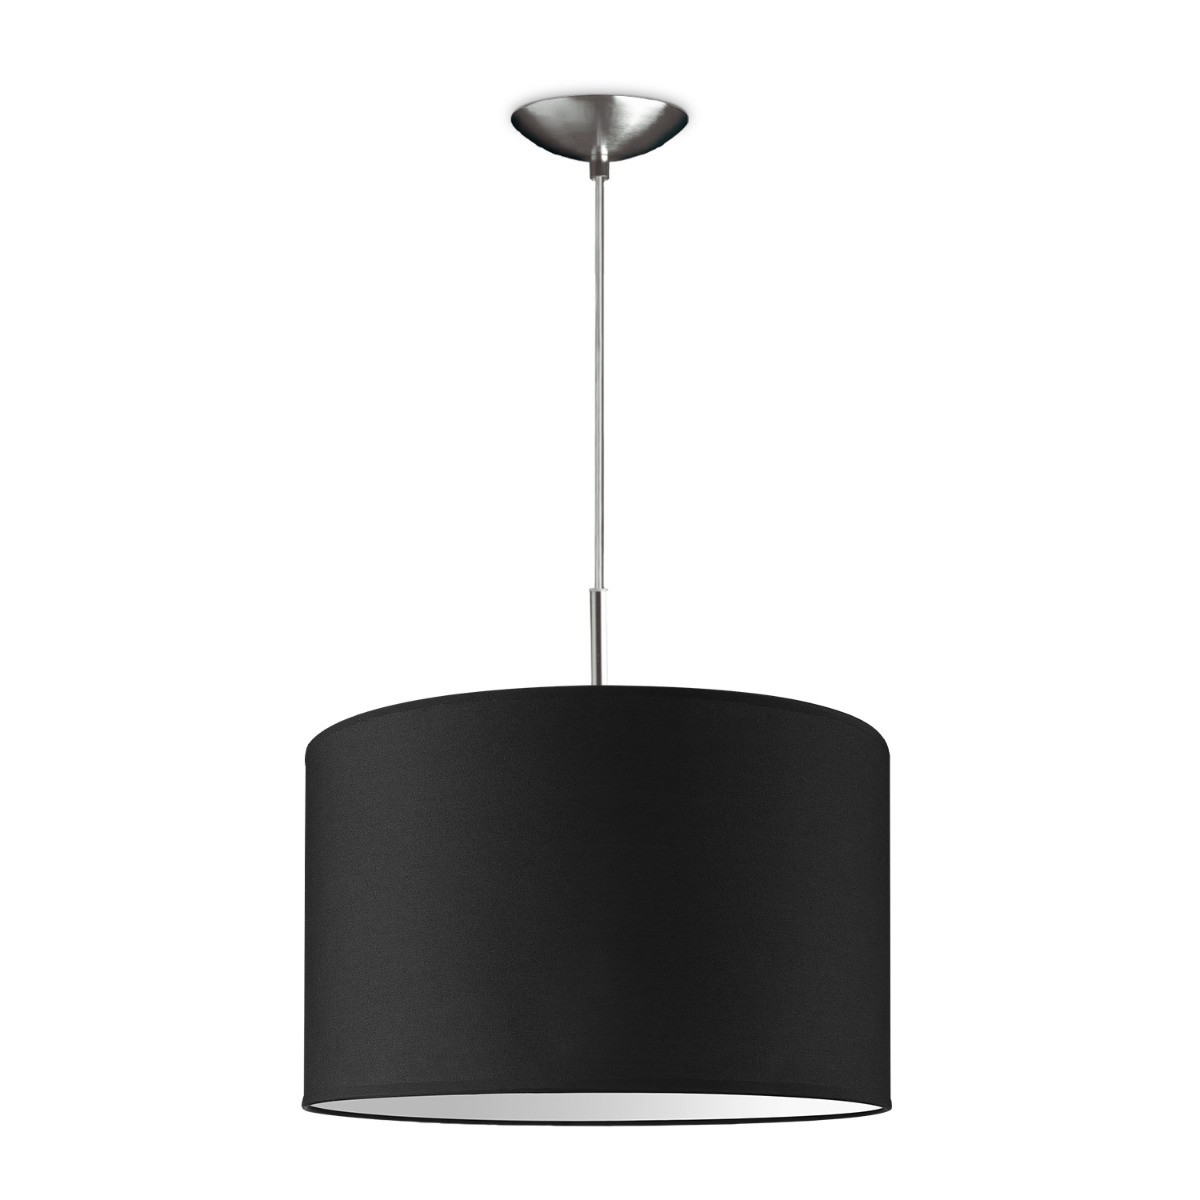 Light depot - hanglamp tube deluxe bling Ø 35 cm - zwart - Outlet